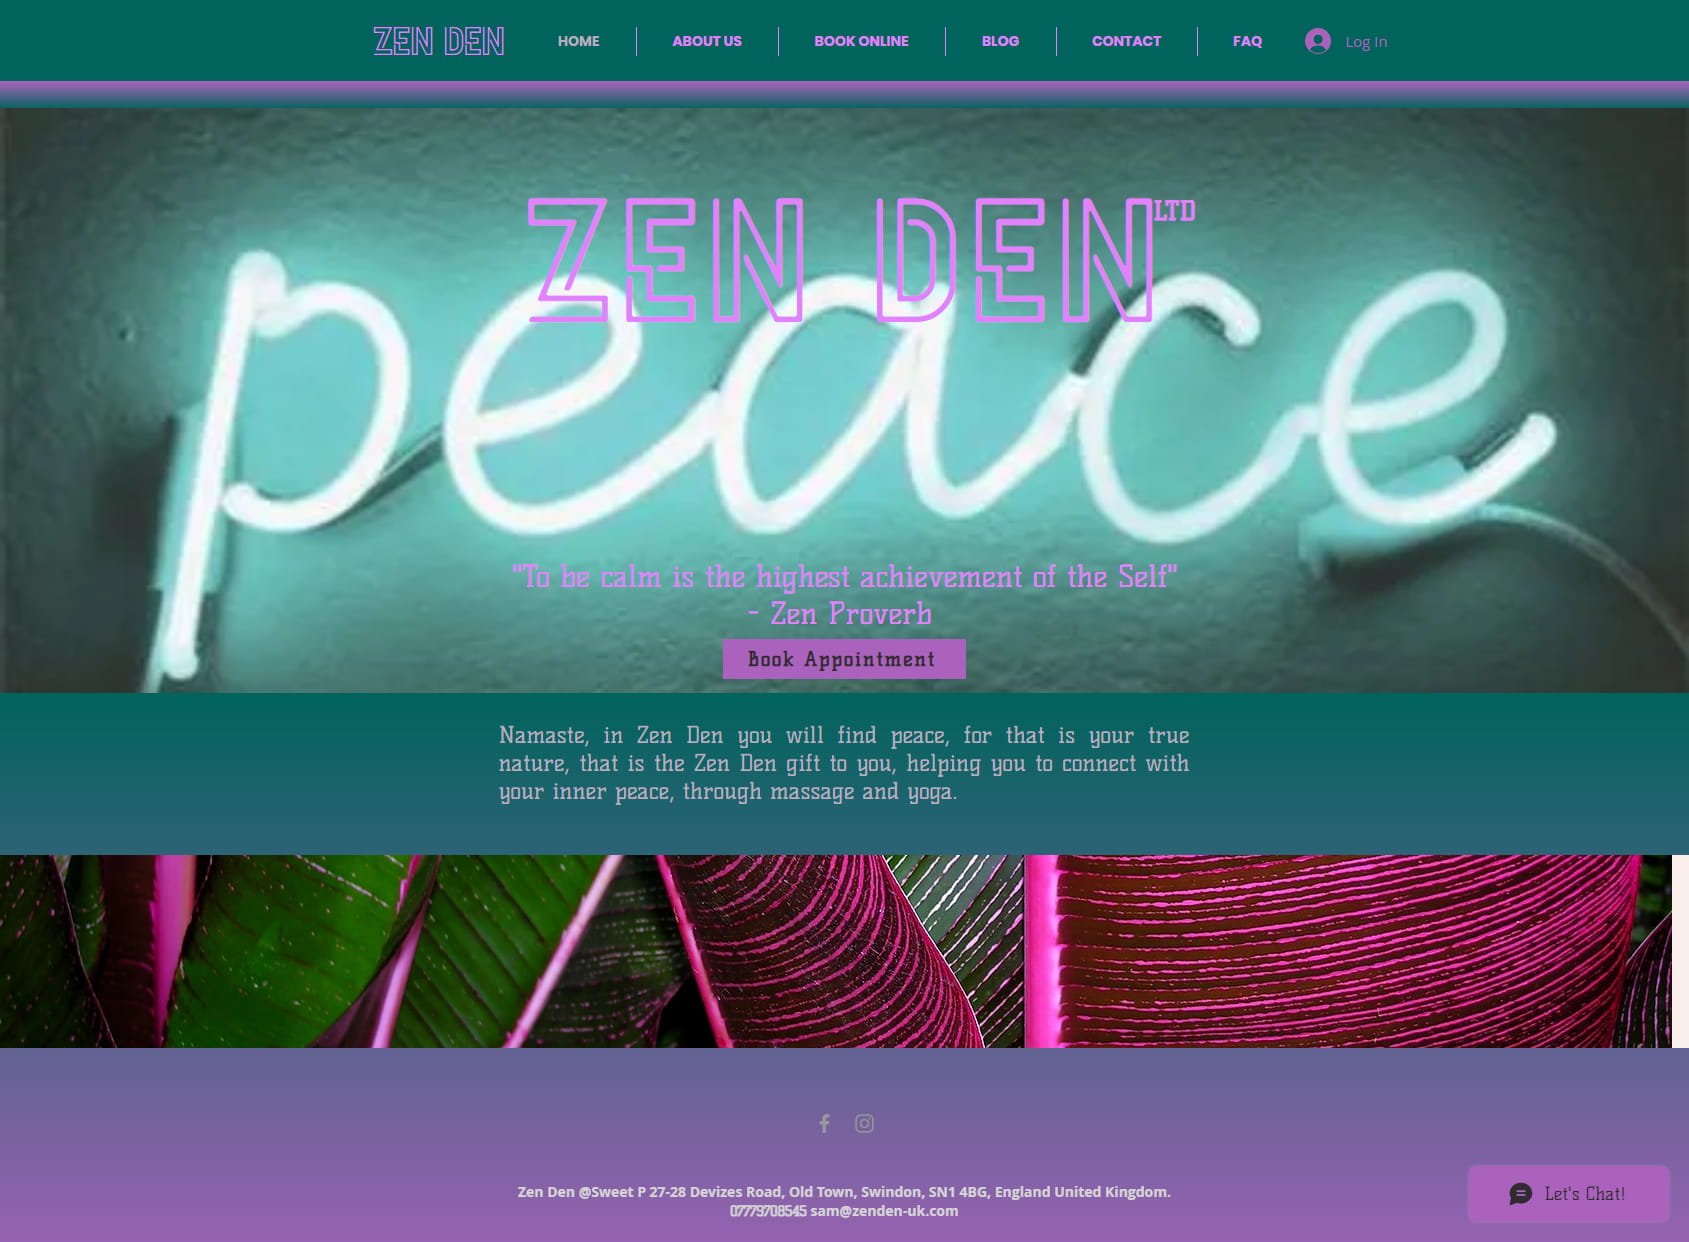 Sri Zen Den Ltd